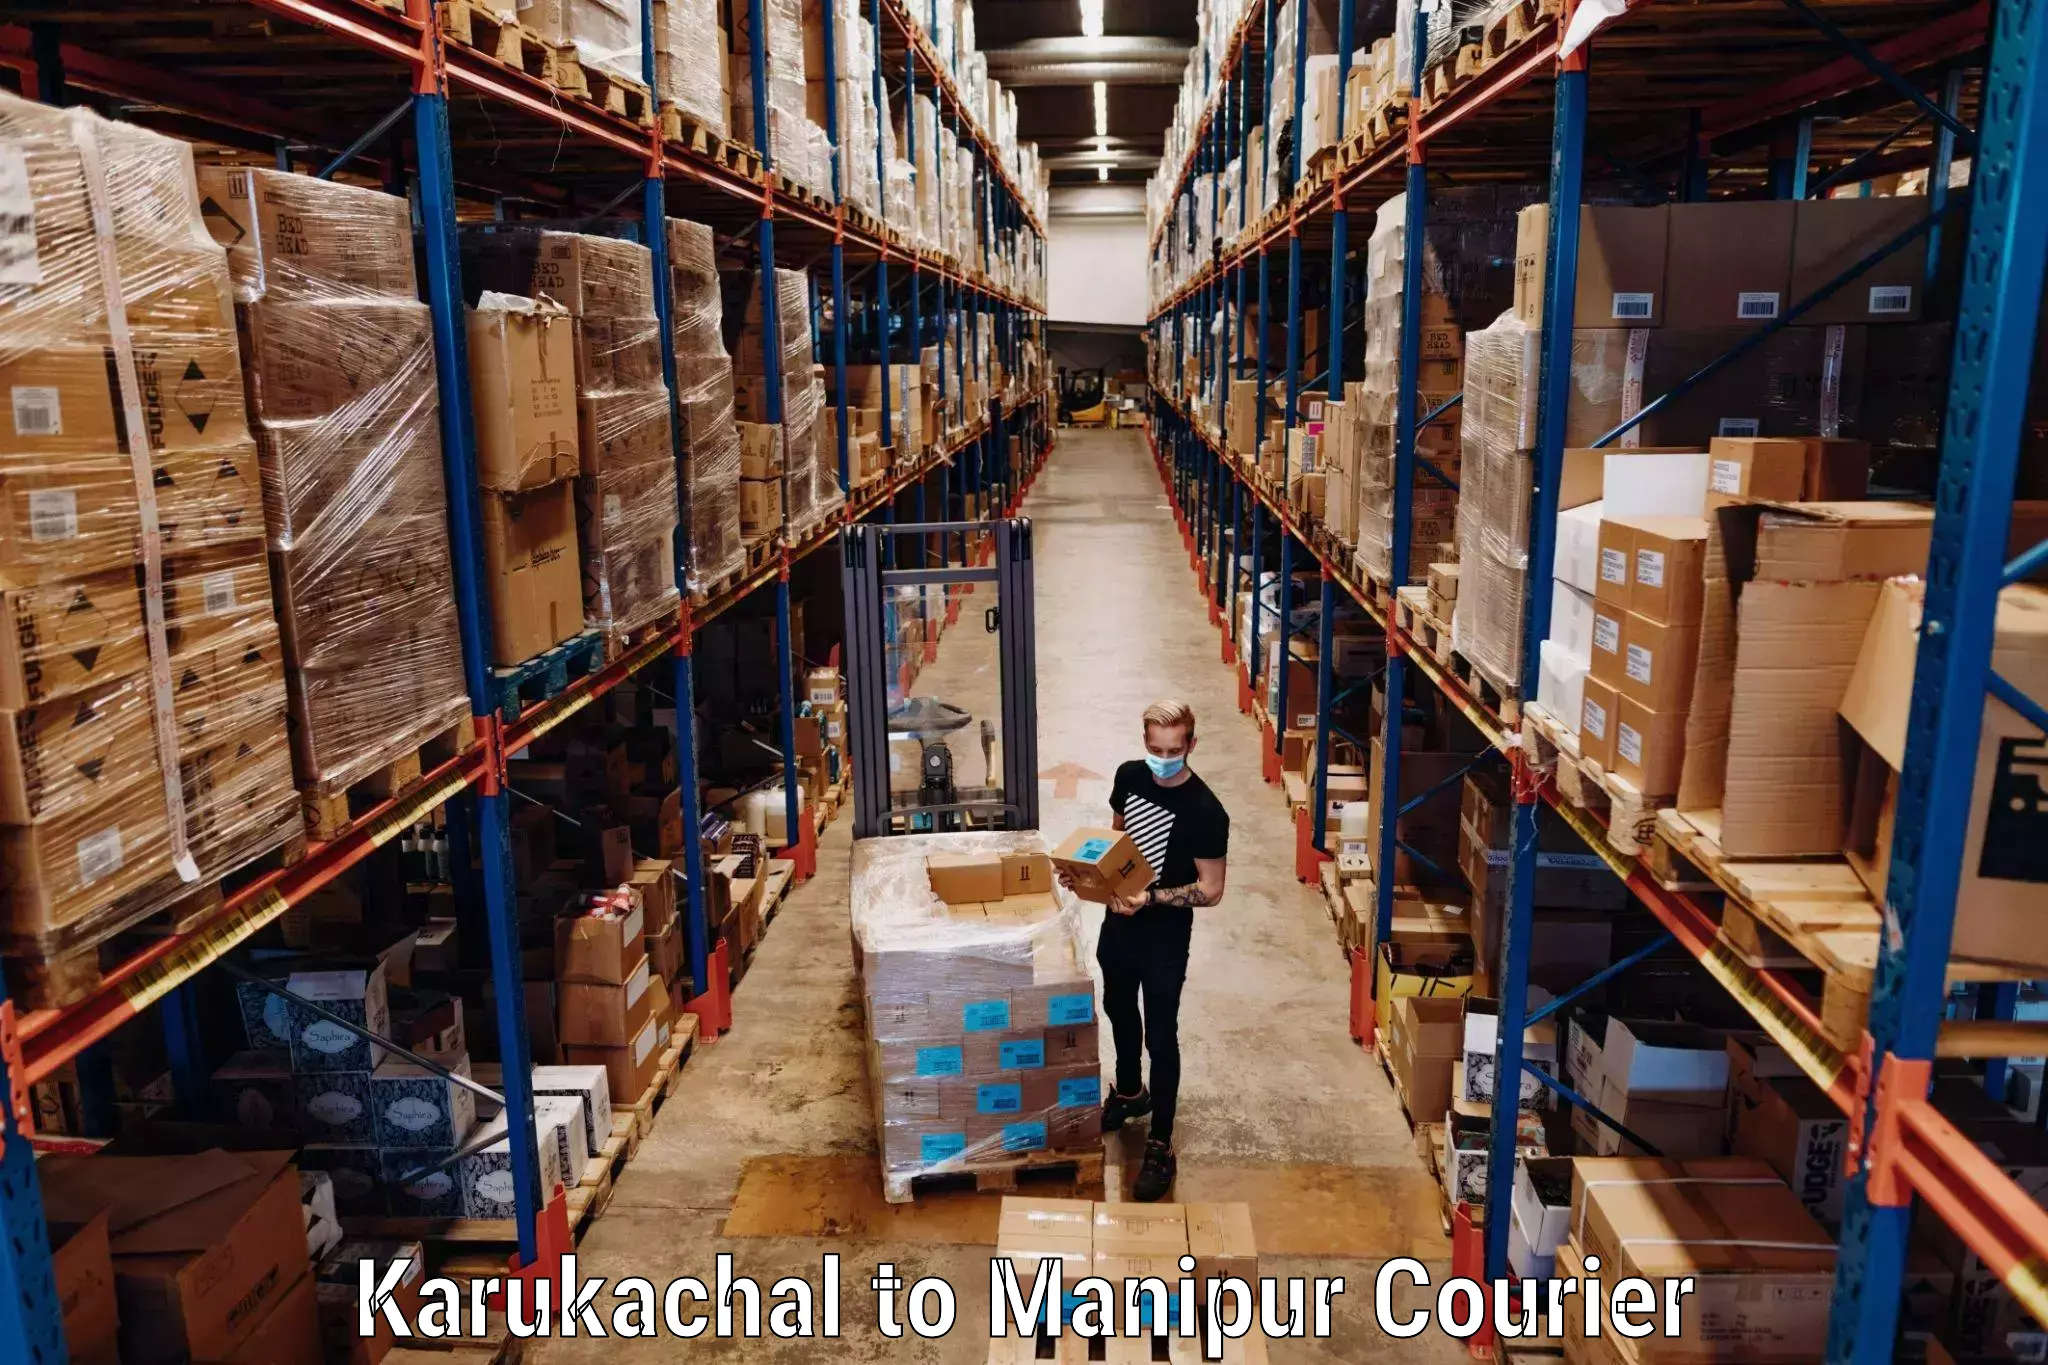 Baggage shipping experts Karukachal to Kakching